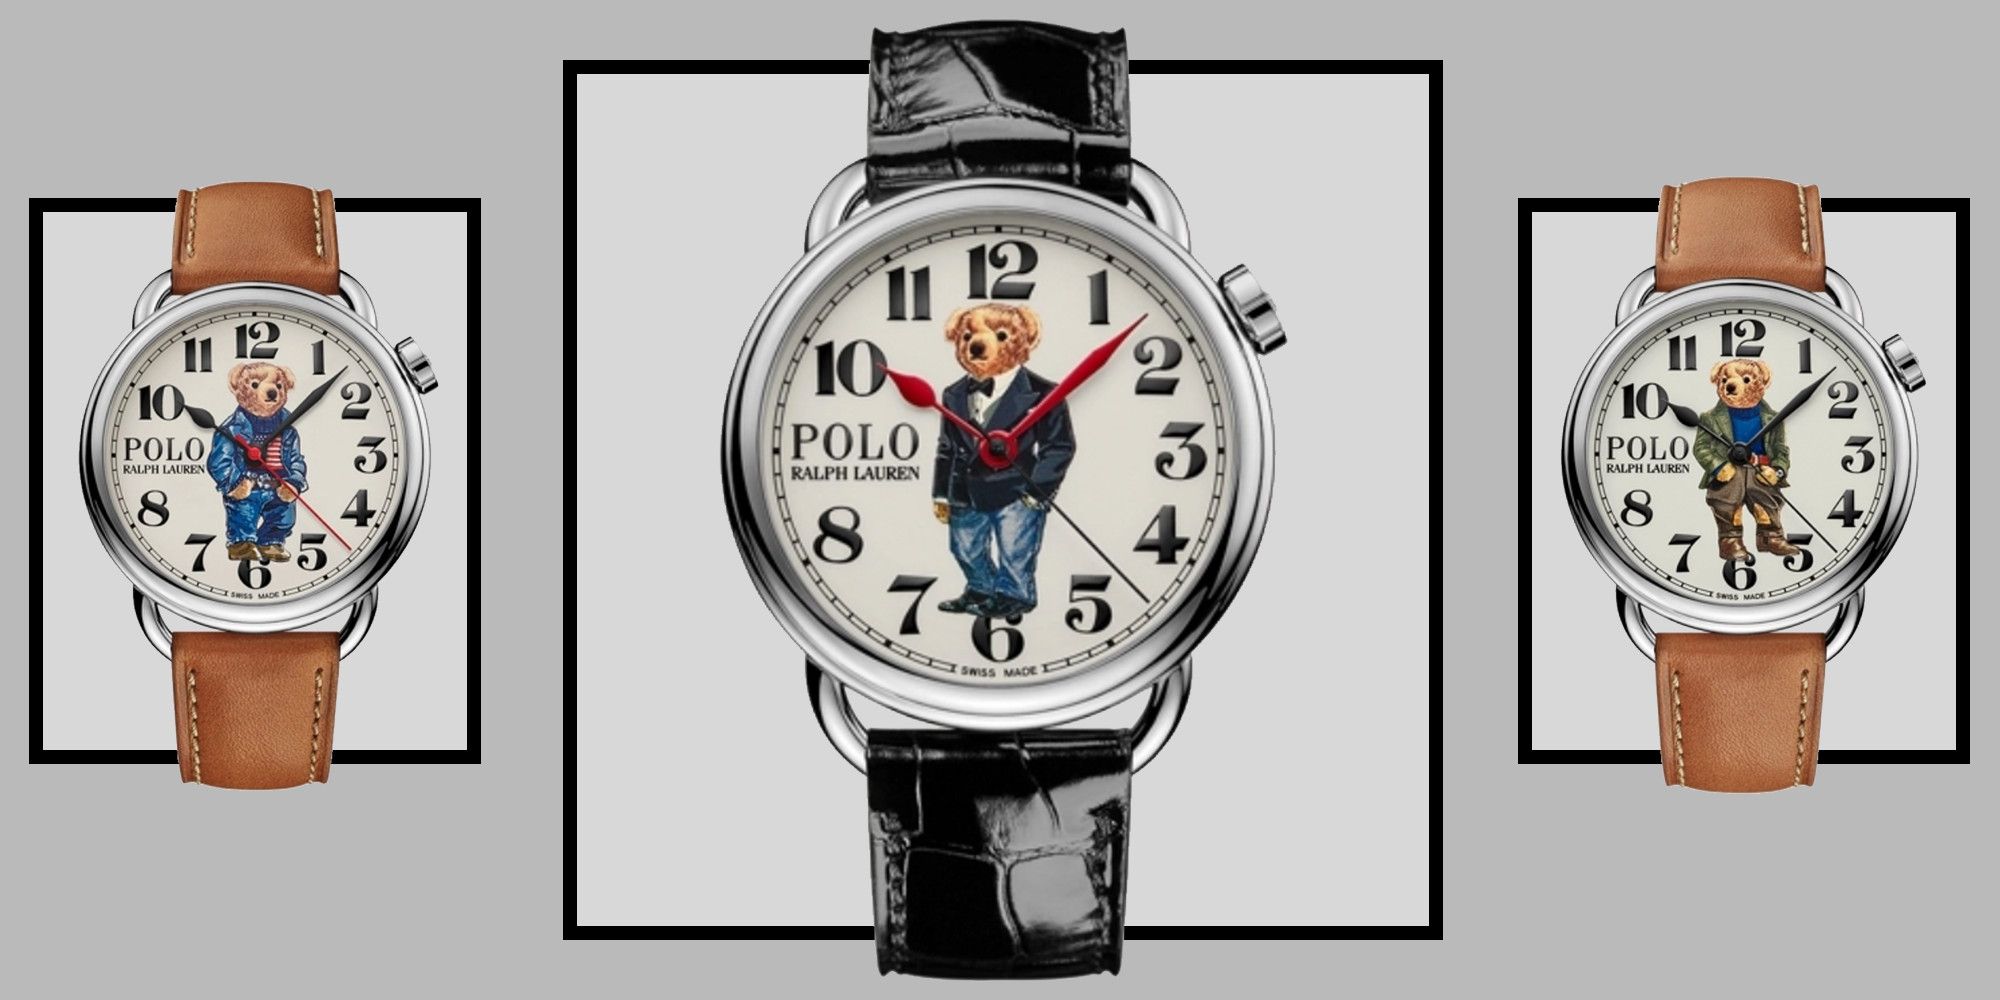 polo bear limited edition